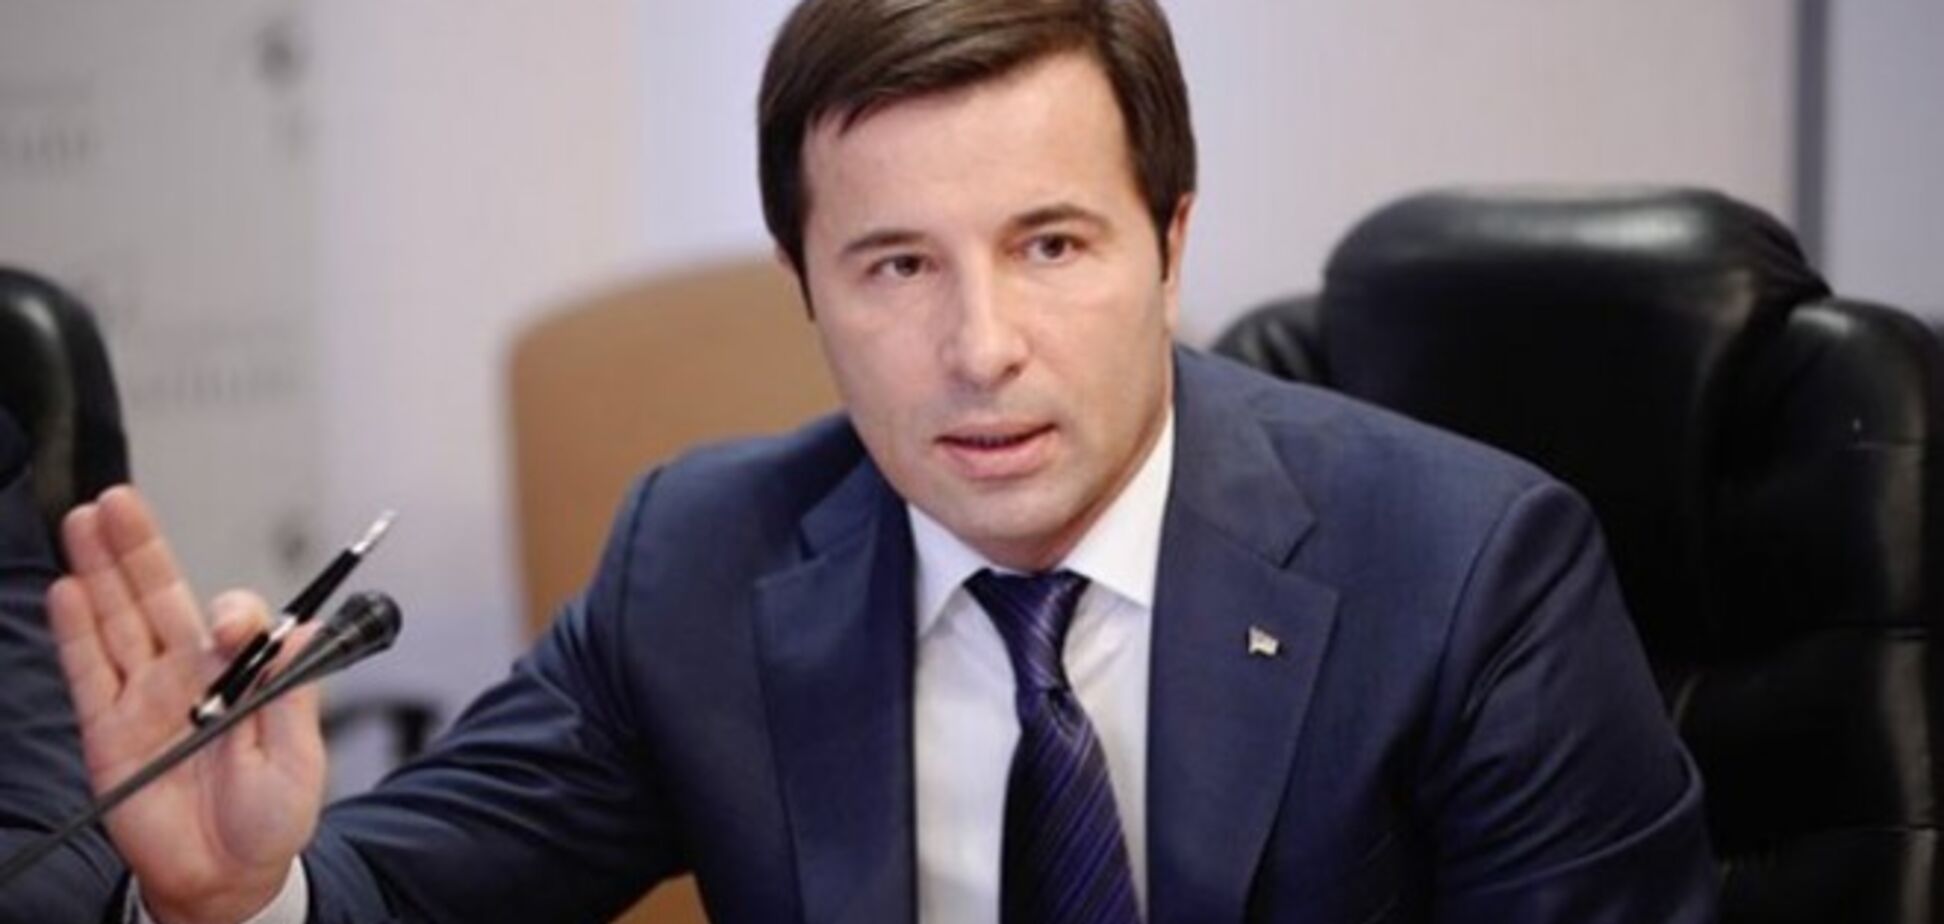 Кандидат в президенты Валерий Коновалюк представил в Вашингтоне план выхода Украины из кризиса